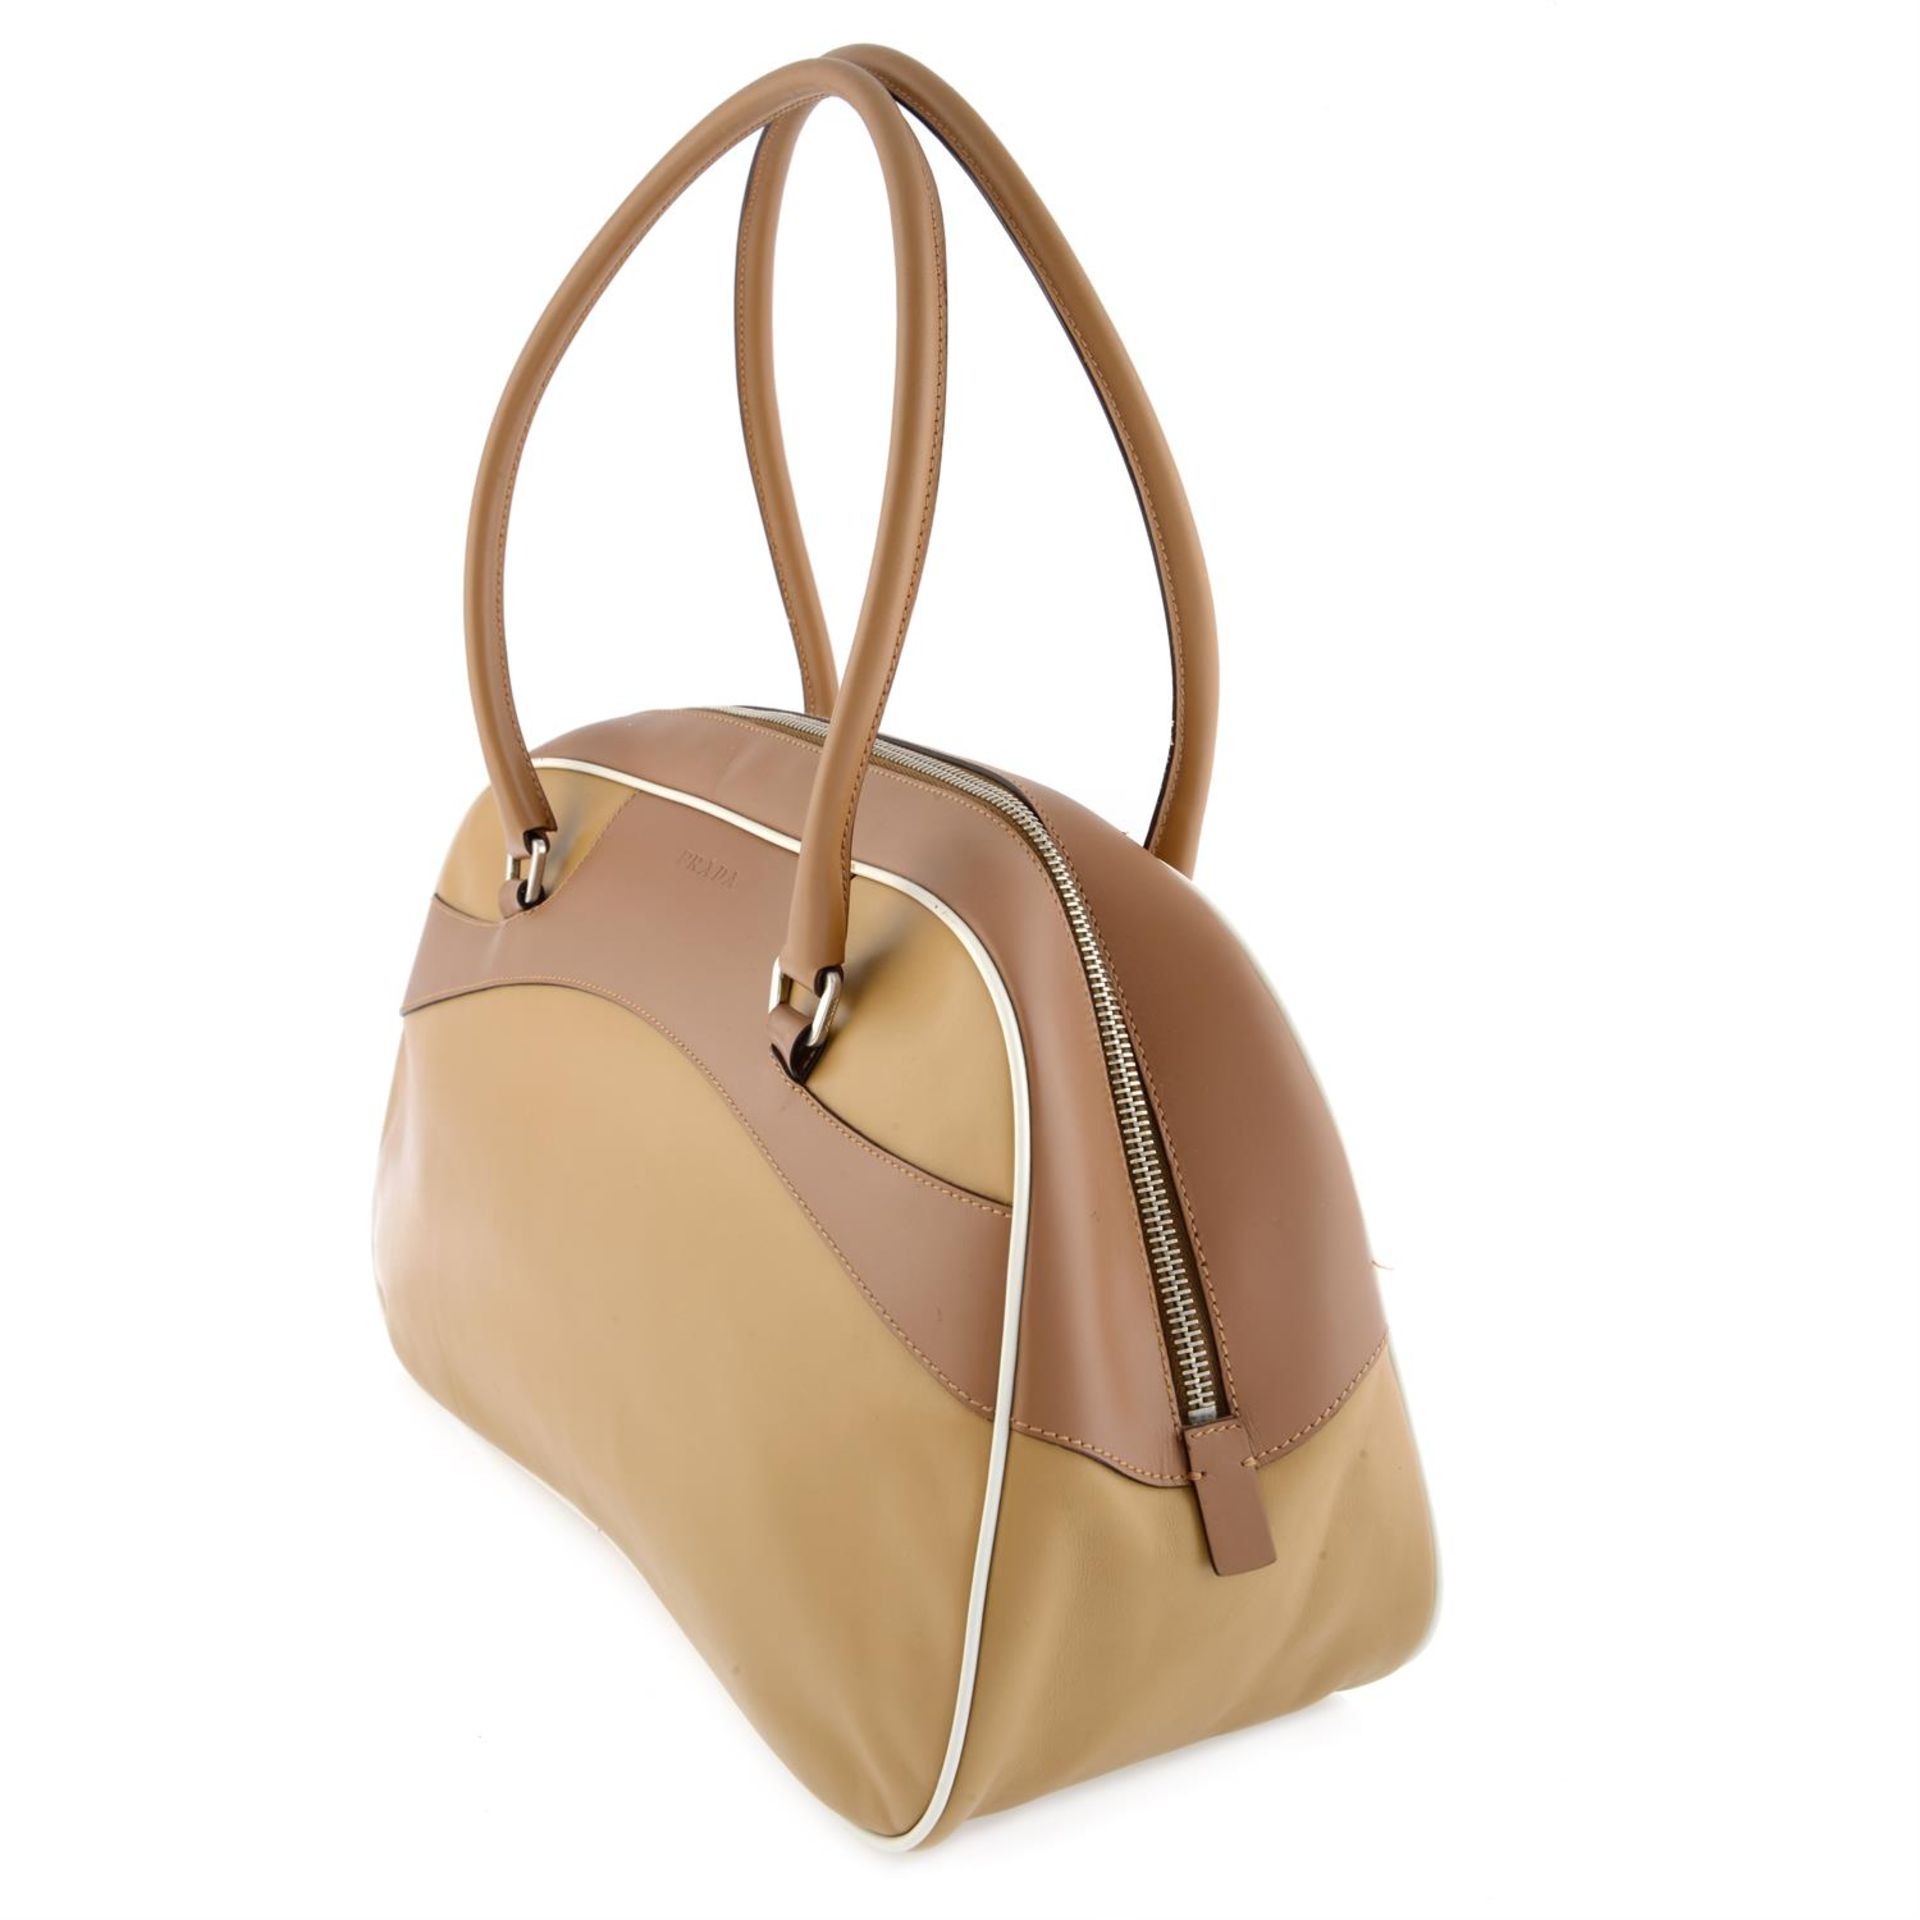 Prada - Bowler bag. - Image 4 of 7